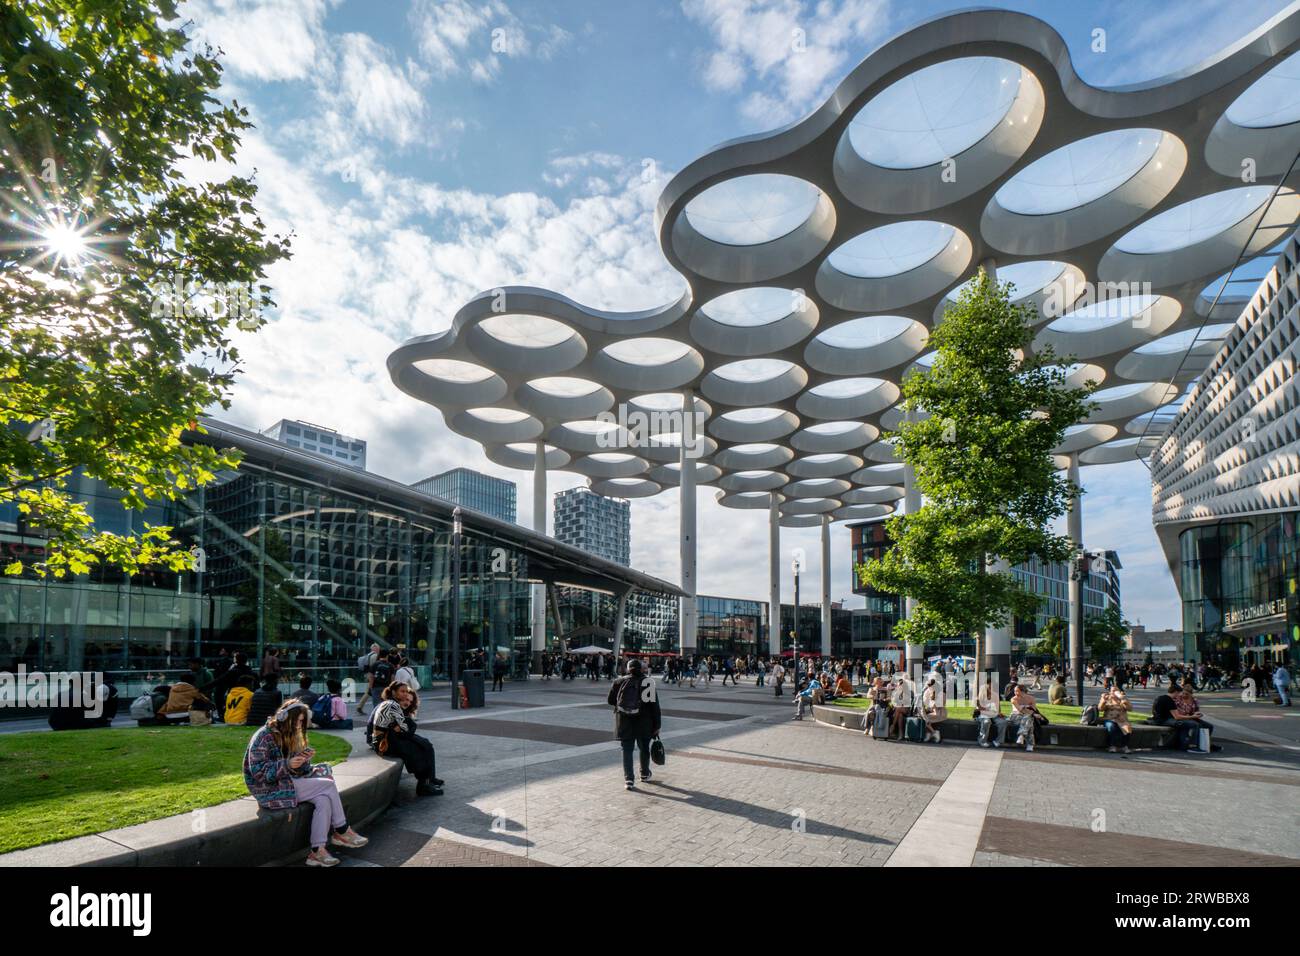 Bahnhofsvorplatz in Utrecht, Utrecht Centraal, Dachkonstruktion mit ETFE Kissen von Buitink Technology, moderne Architektur,  Holland, Niederlande, Eu Stock Photo